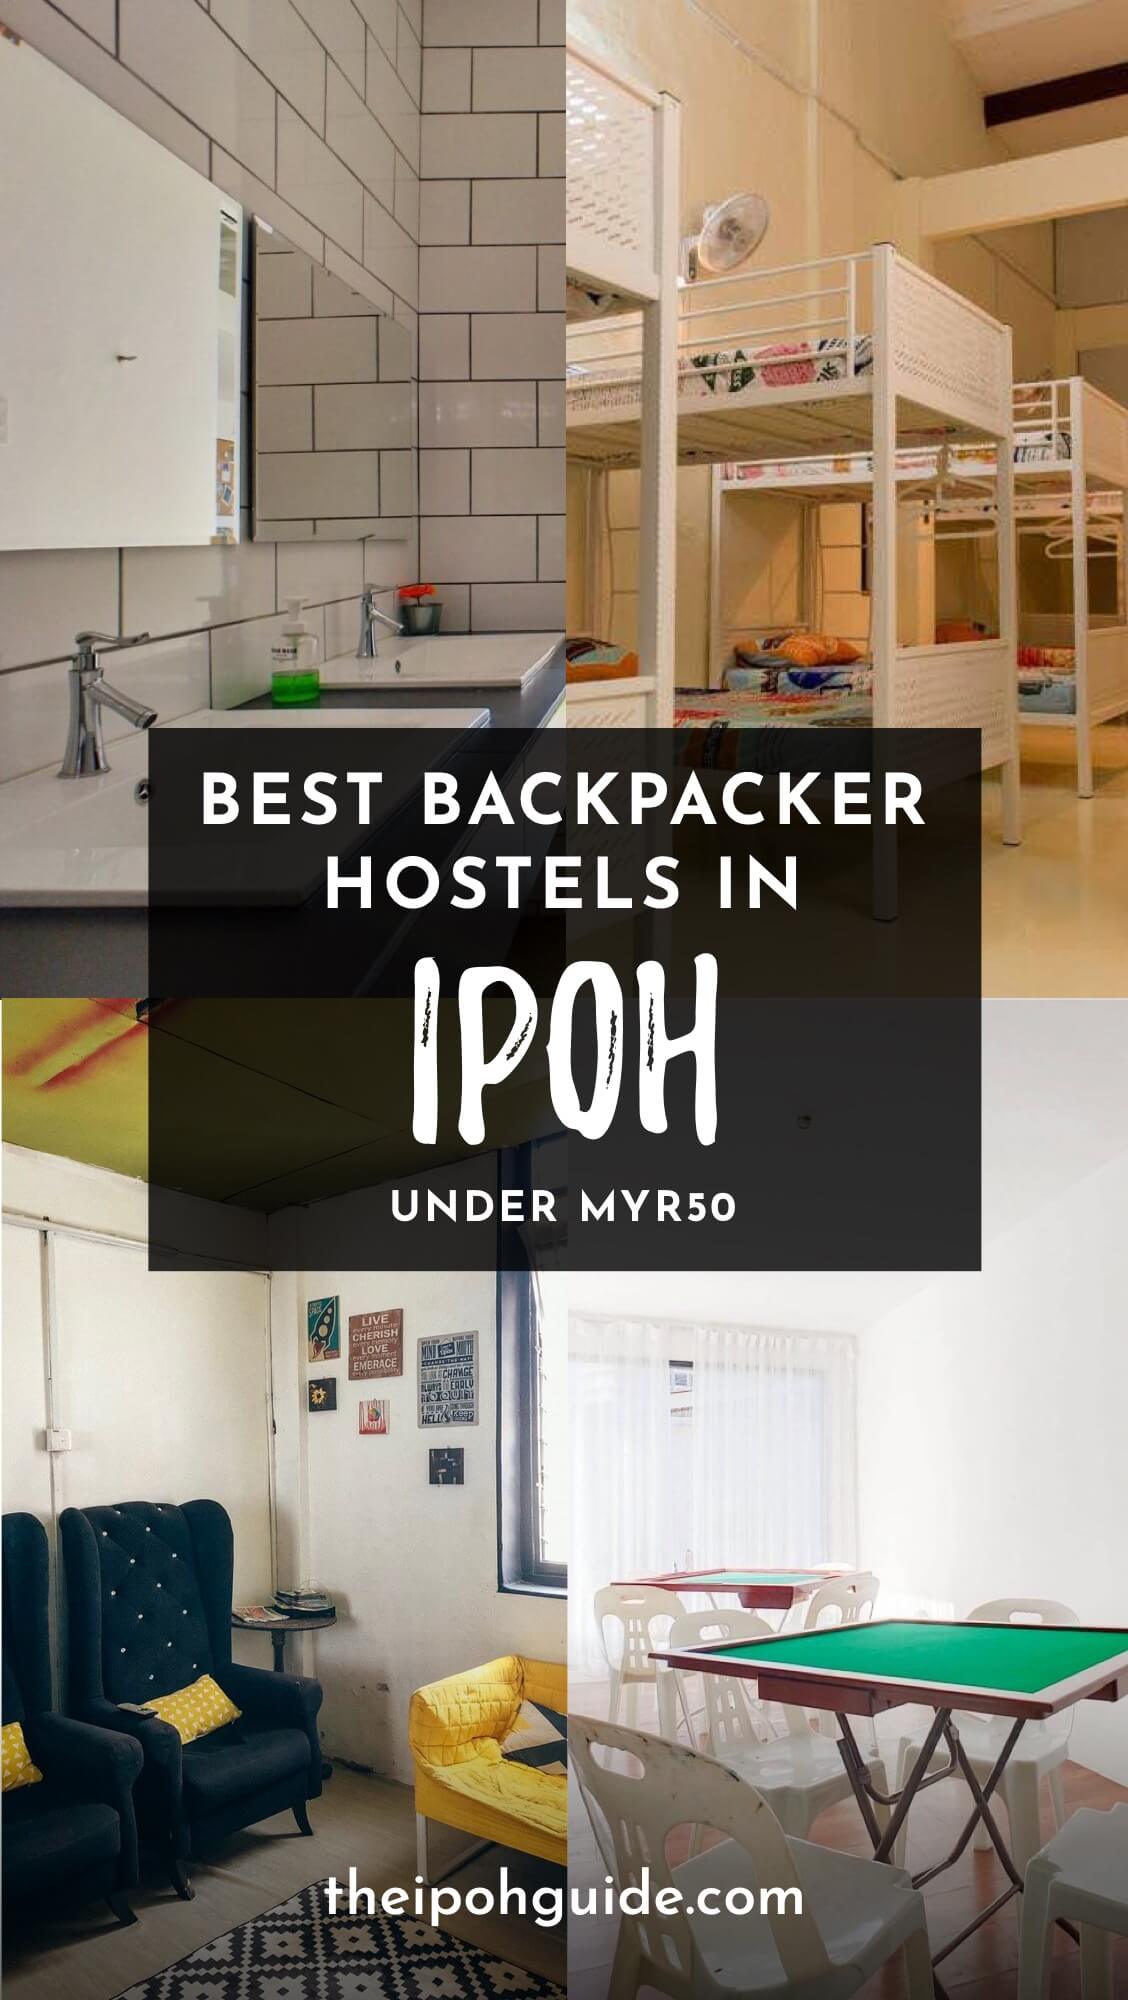 Backpacker Hostels in Ipoh